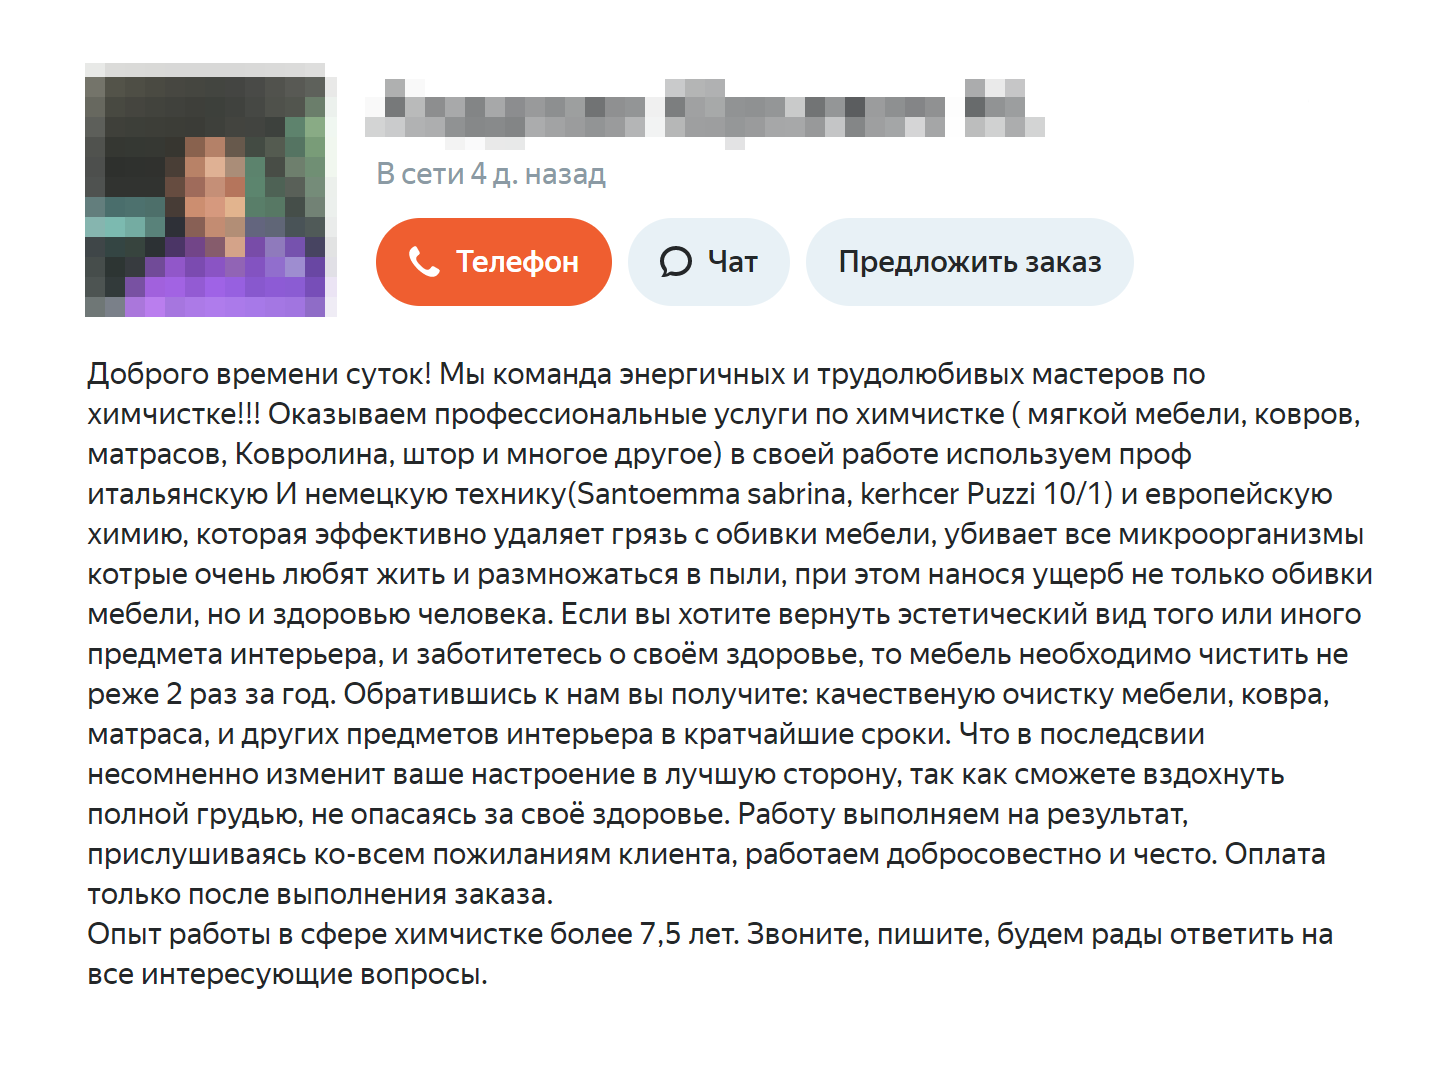 А этот мастер с «Яндекс⁠-⁠услуг» называет даже модель своего пылесоса — Karcher Puzzi 10/1